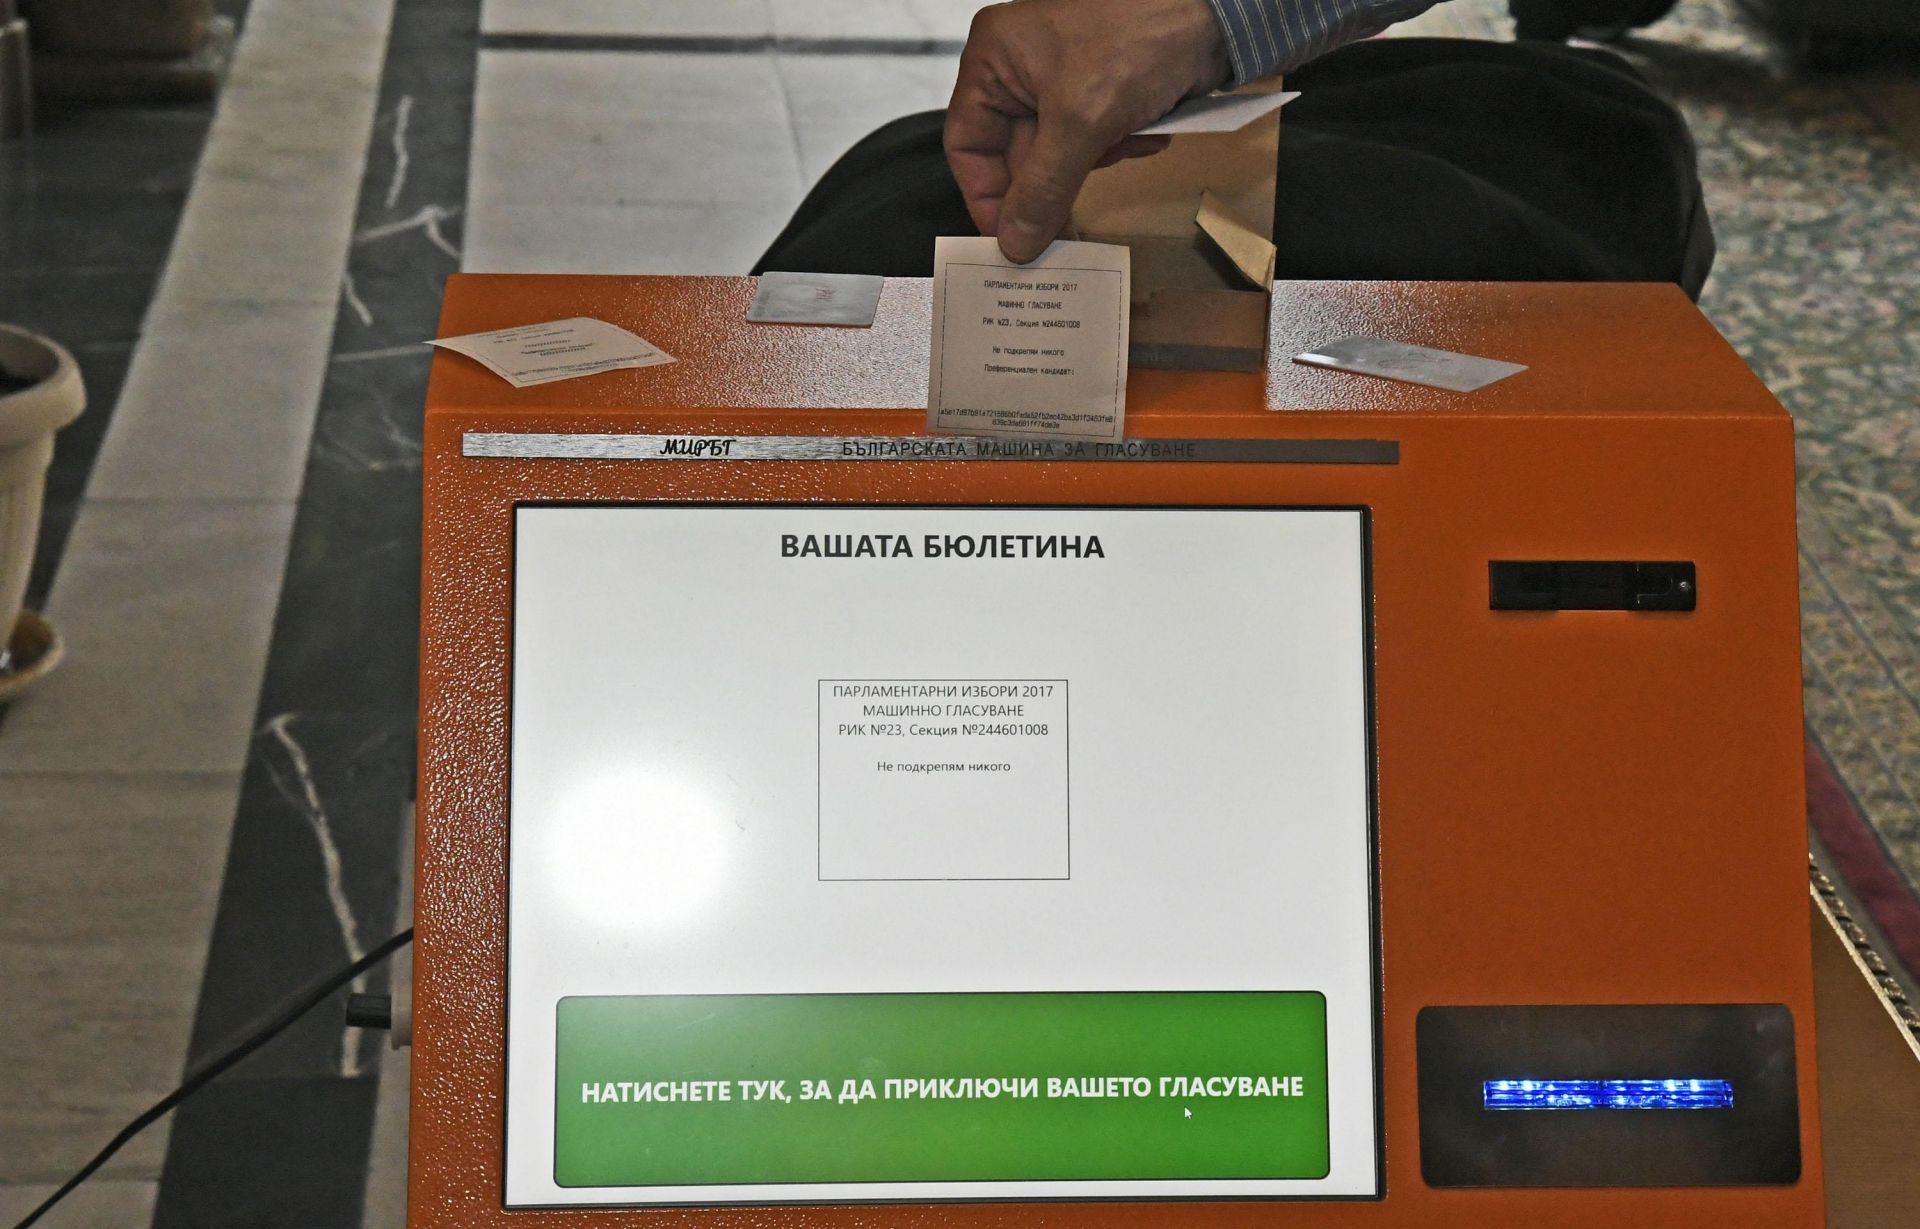 Българският изобретател инженер Александър Чобанов показа нова машина за гласуване пред членовете на правната парламентарна комисия